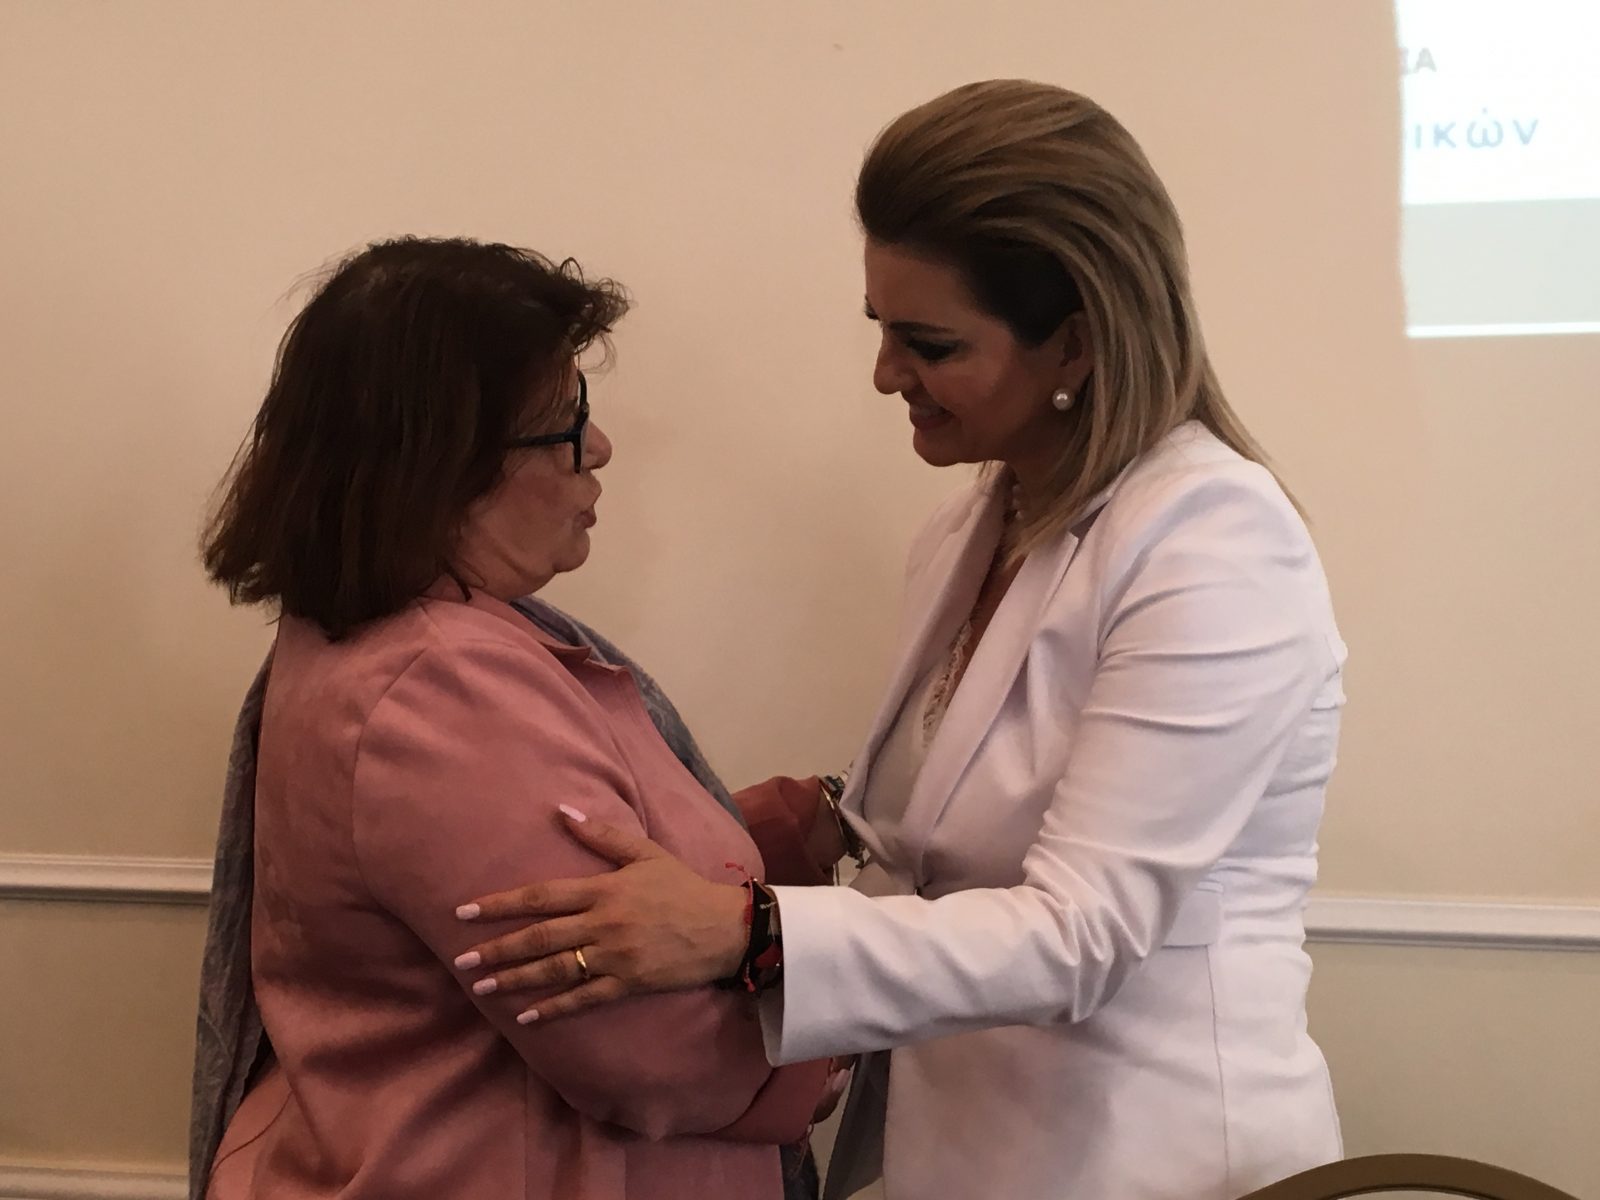 Ζωή Λιβανίου: «1 γυναίκα Βουλευτής στους 16 της Στερεάς, 3 γυναίκες Δήμαρχοι στους 25 της Στερεάς»